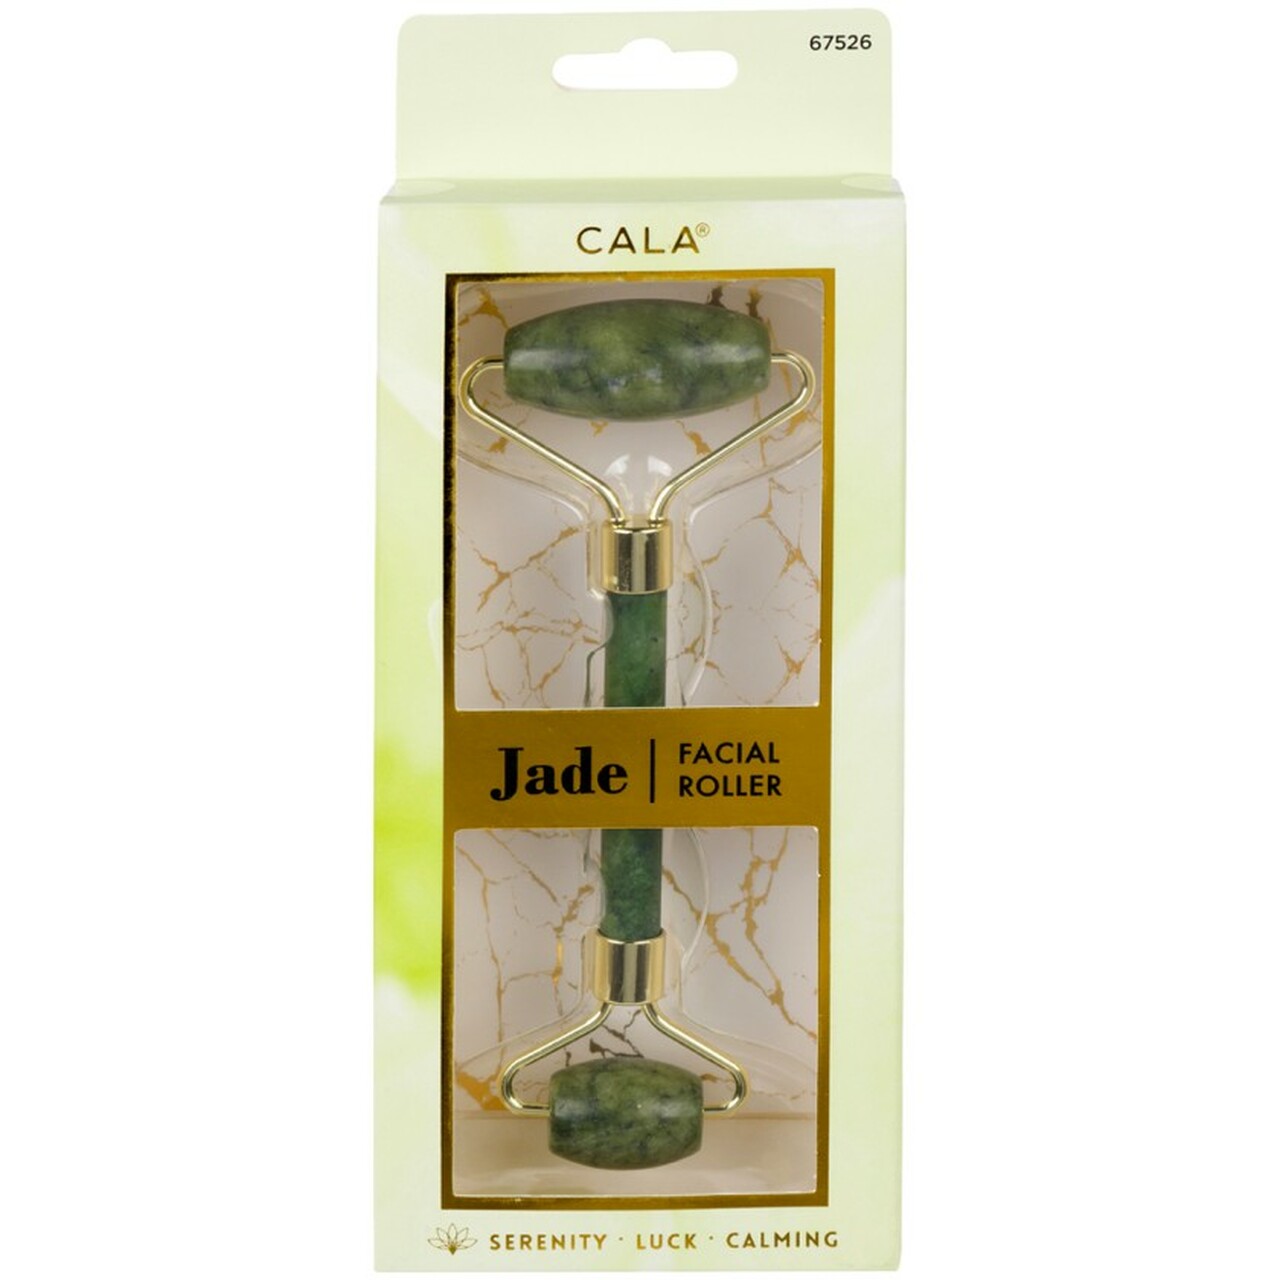 Cala - Jade Facial Roller